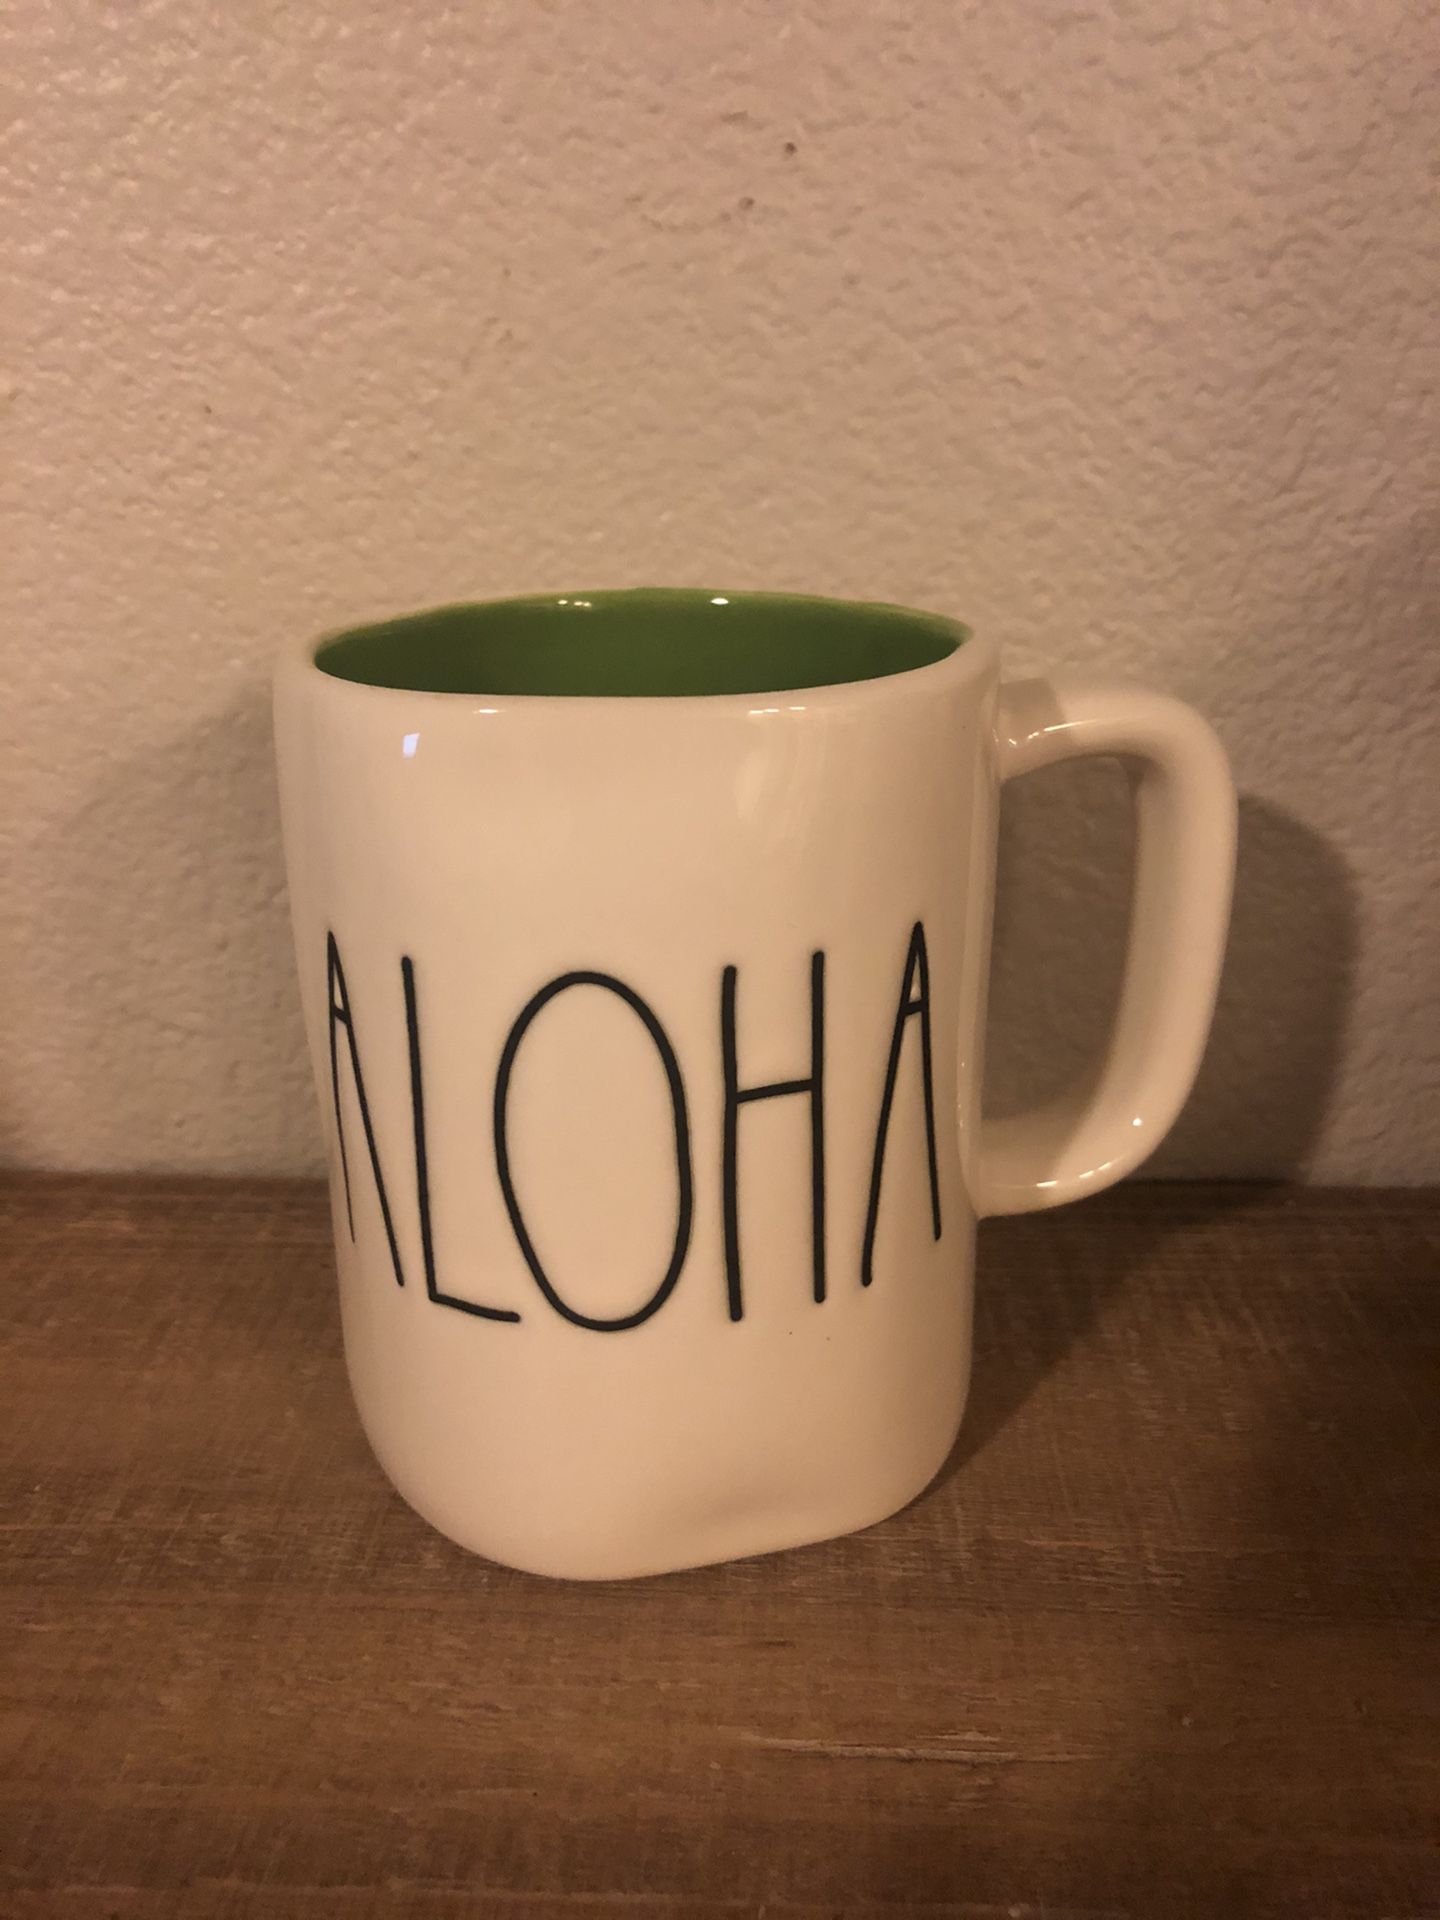 Rae Dunn Aloha Mug with Green Inside